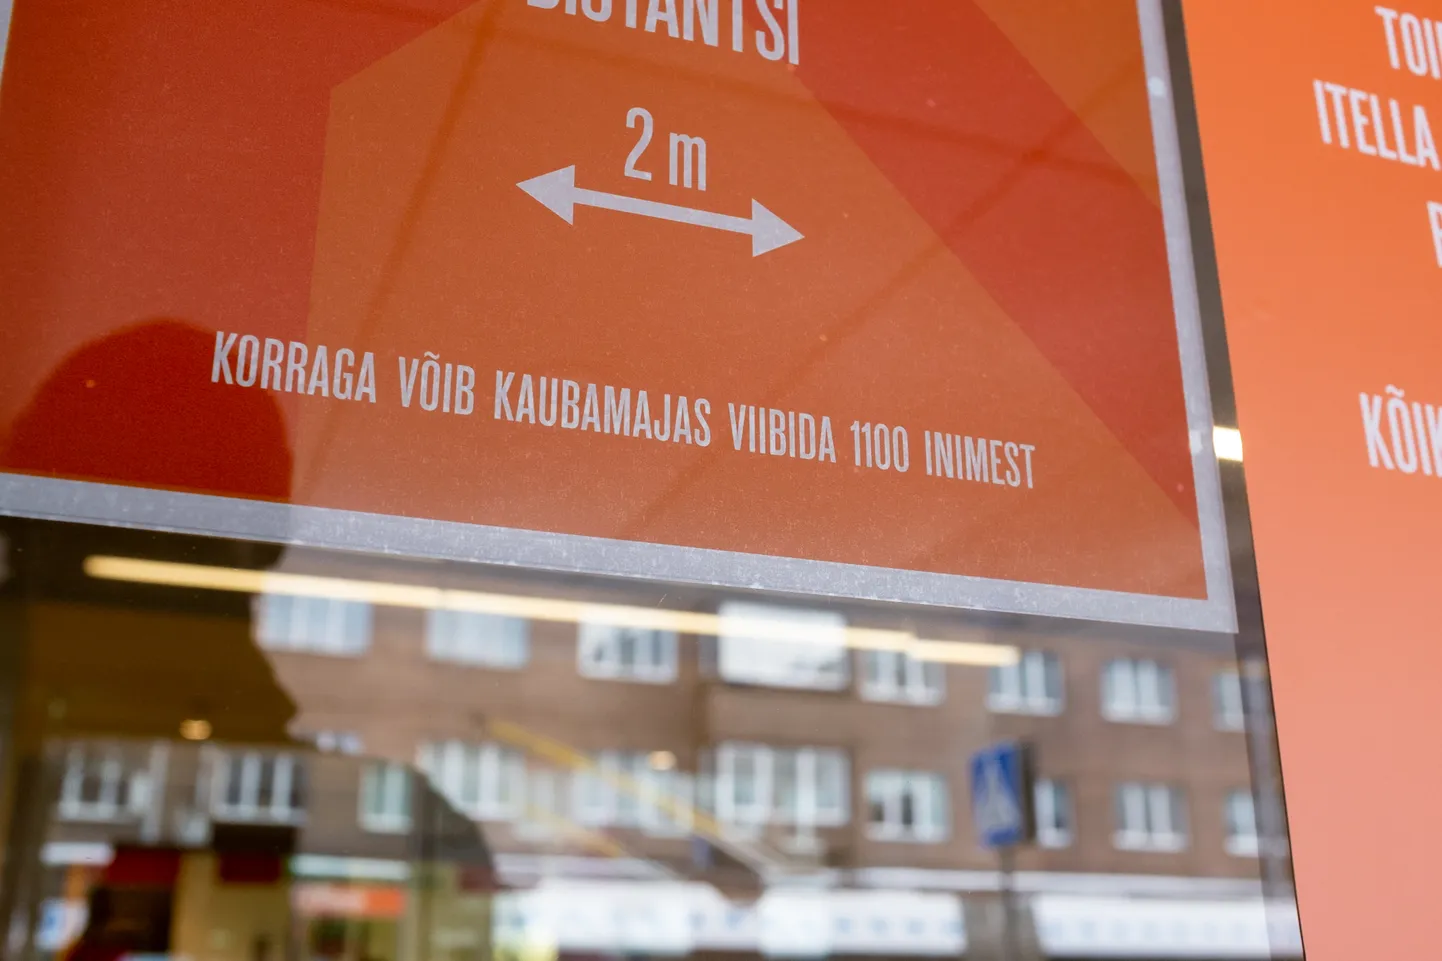 Koroonapiirangud Tallinna Kaubamaja kasumirallit ei vääranud